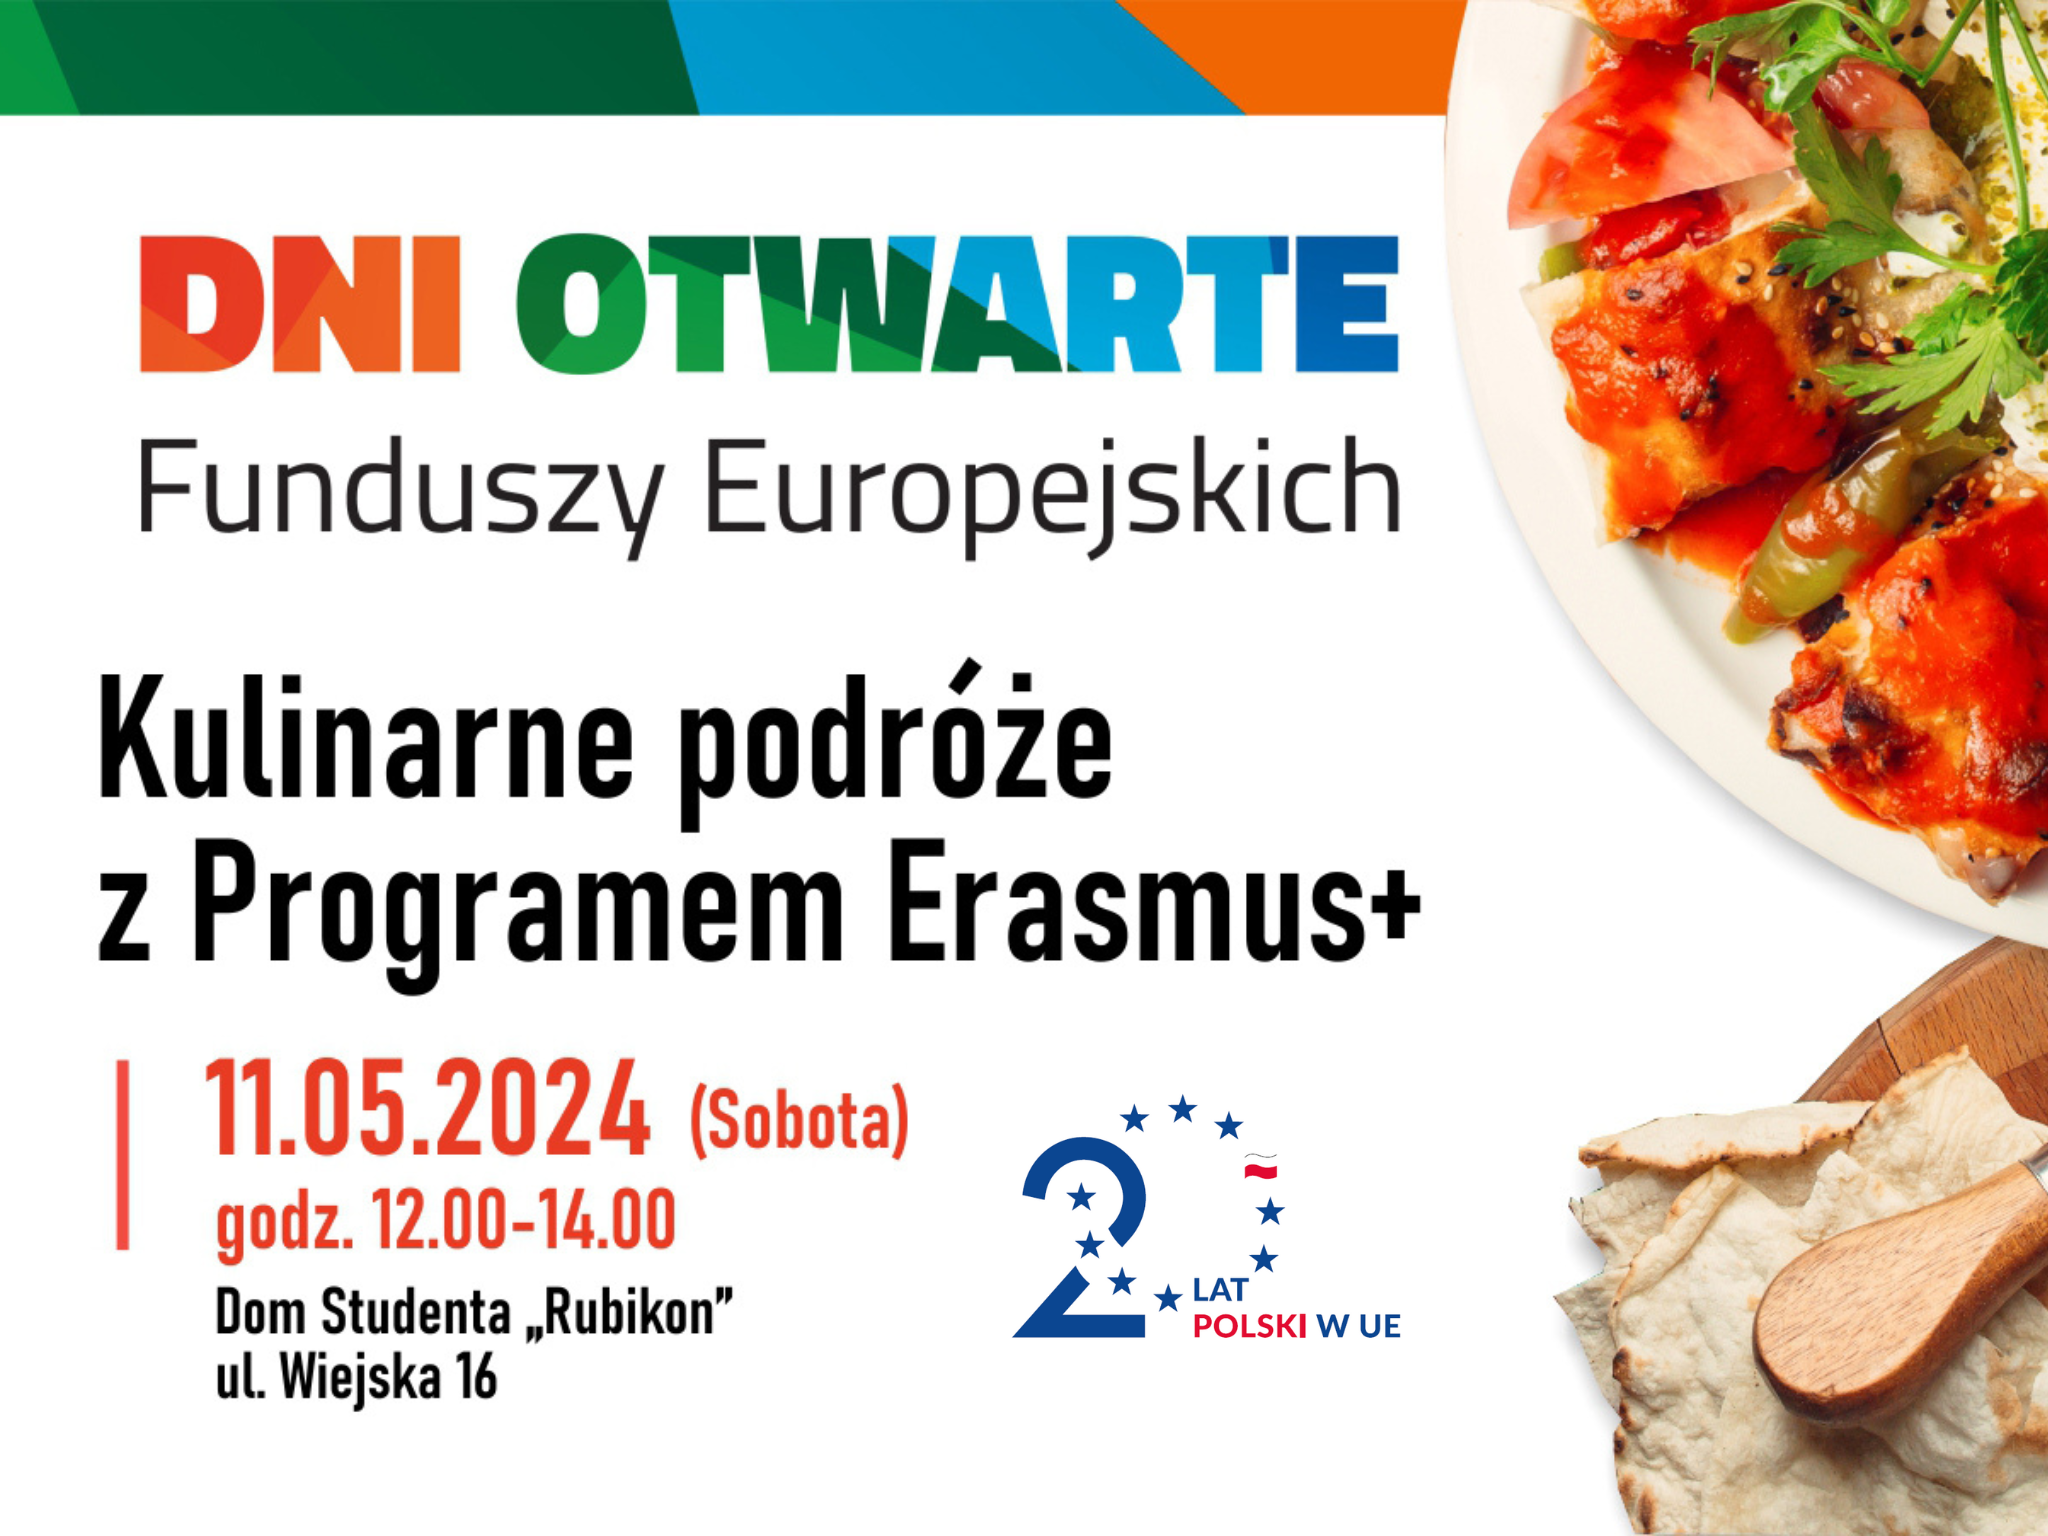 Plakat reklamowy, po prawej stronie przykładowe danie, po lewej tekst: Kulinarne Podróże z Programem Erasmus Plus, oraz informacje zawarte w tekście artykułu.